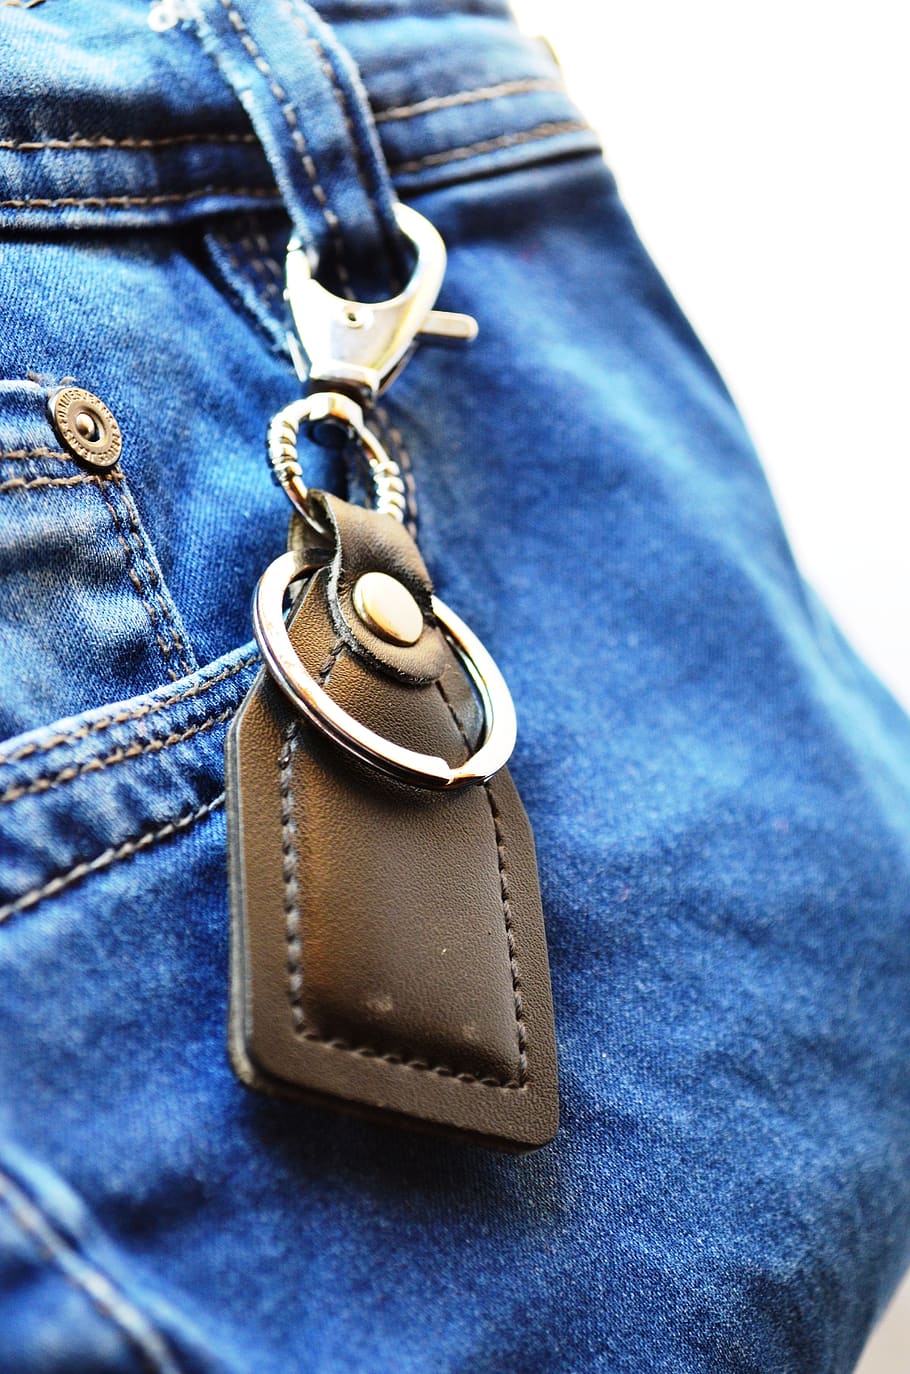 chaveiro, jeans, azul, bolso, etiqueta, moda, roupas, casual, algodão, pano